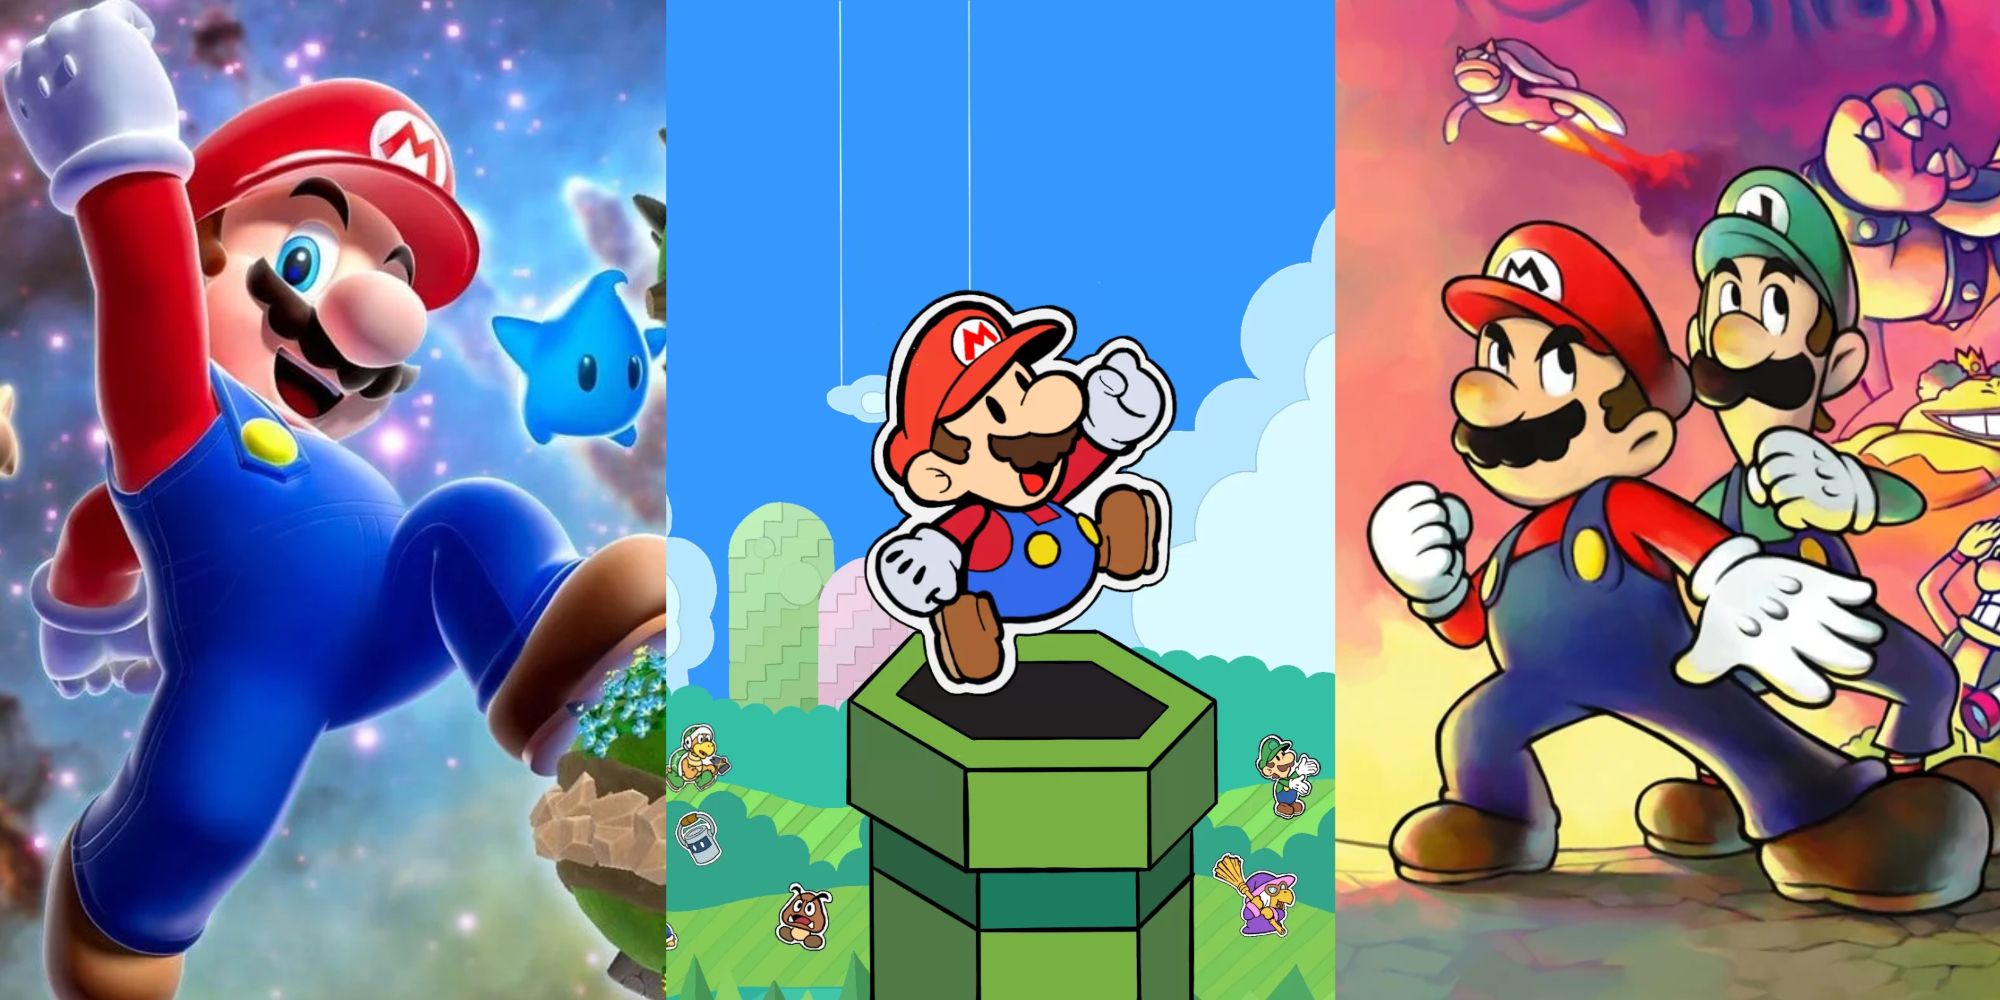 Promo images of Mario Galaxy, Paper Mario, and Mario & Luigi